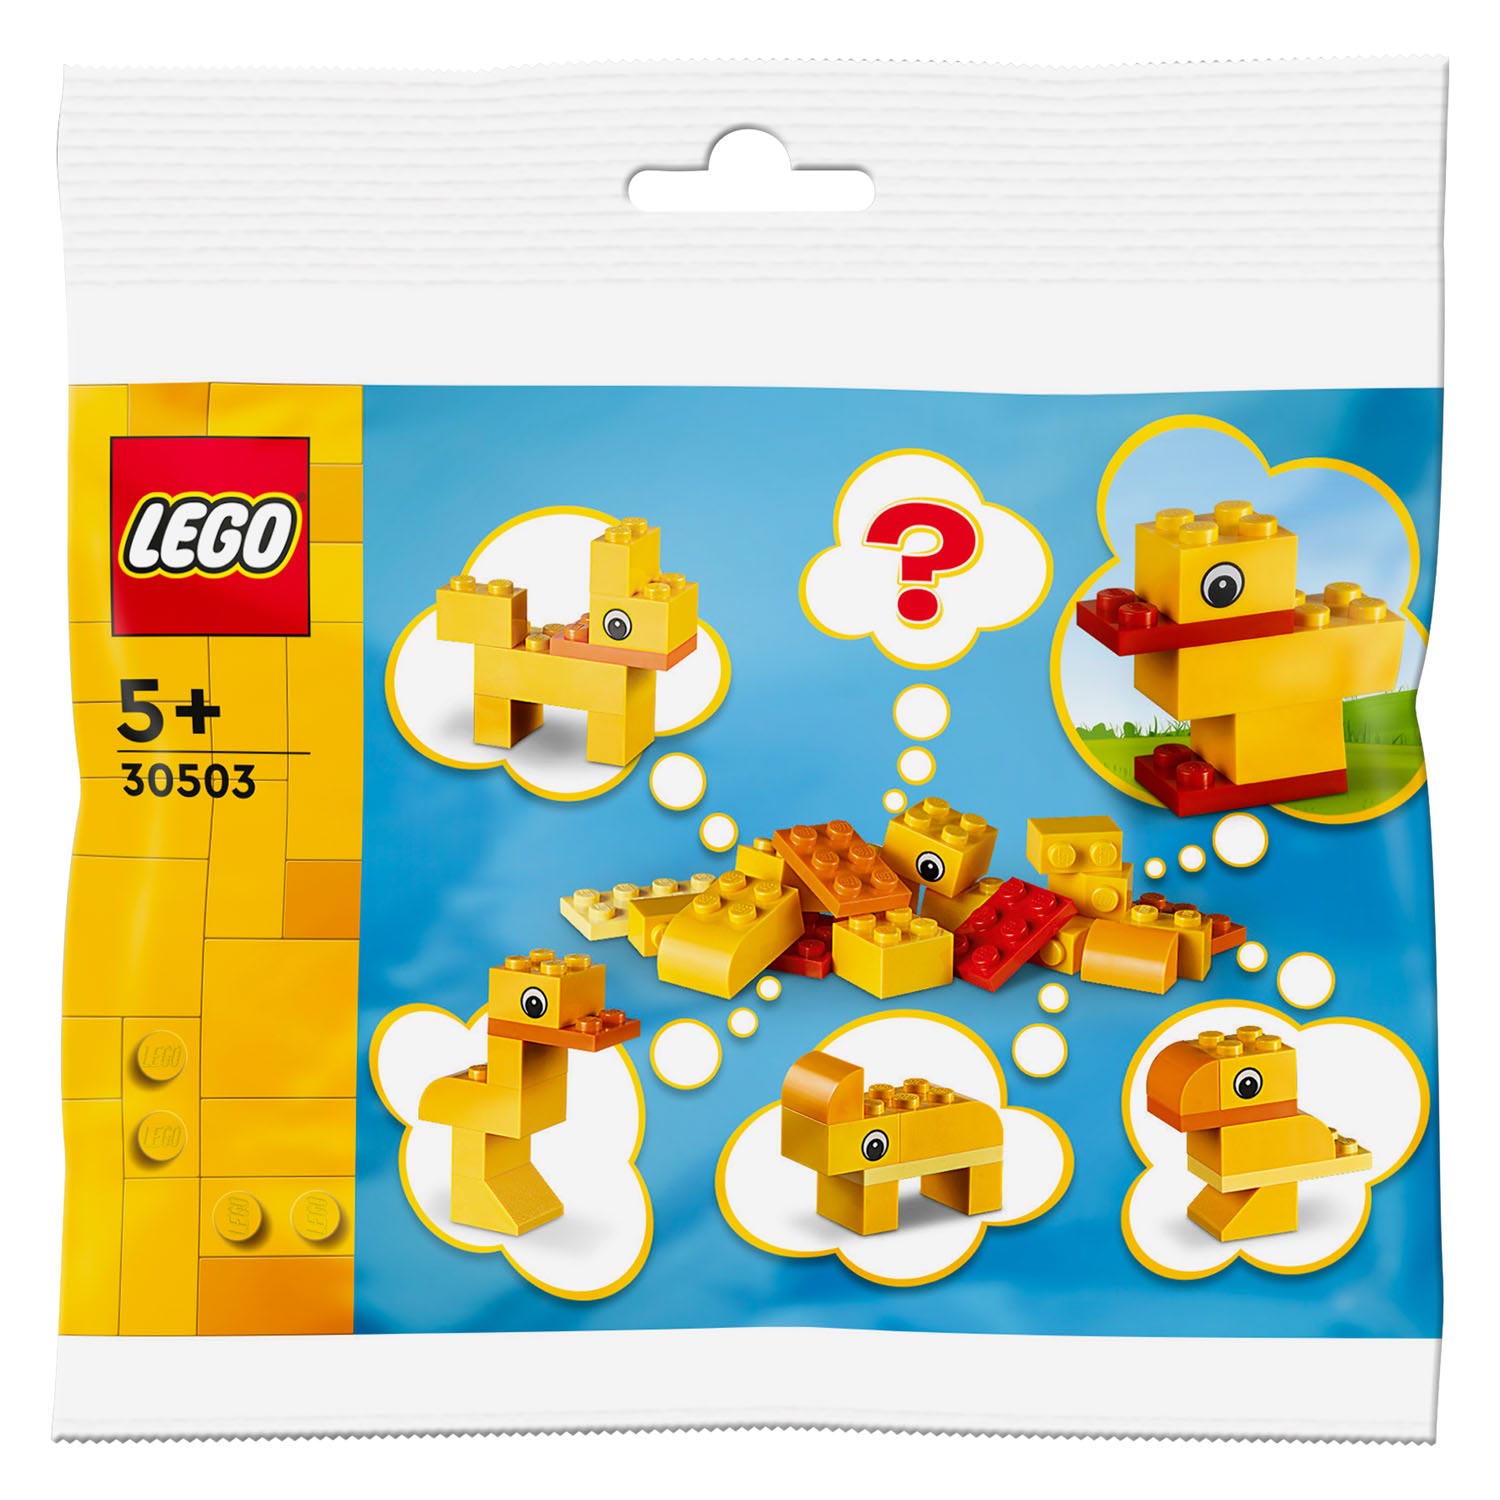 LEGO 30503 Zelf Dieren Bouwen - Zoals jij wilt